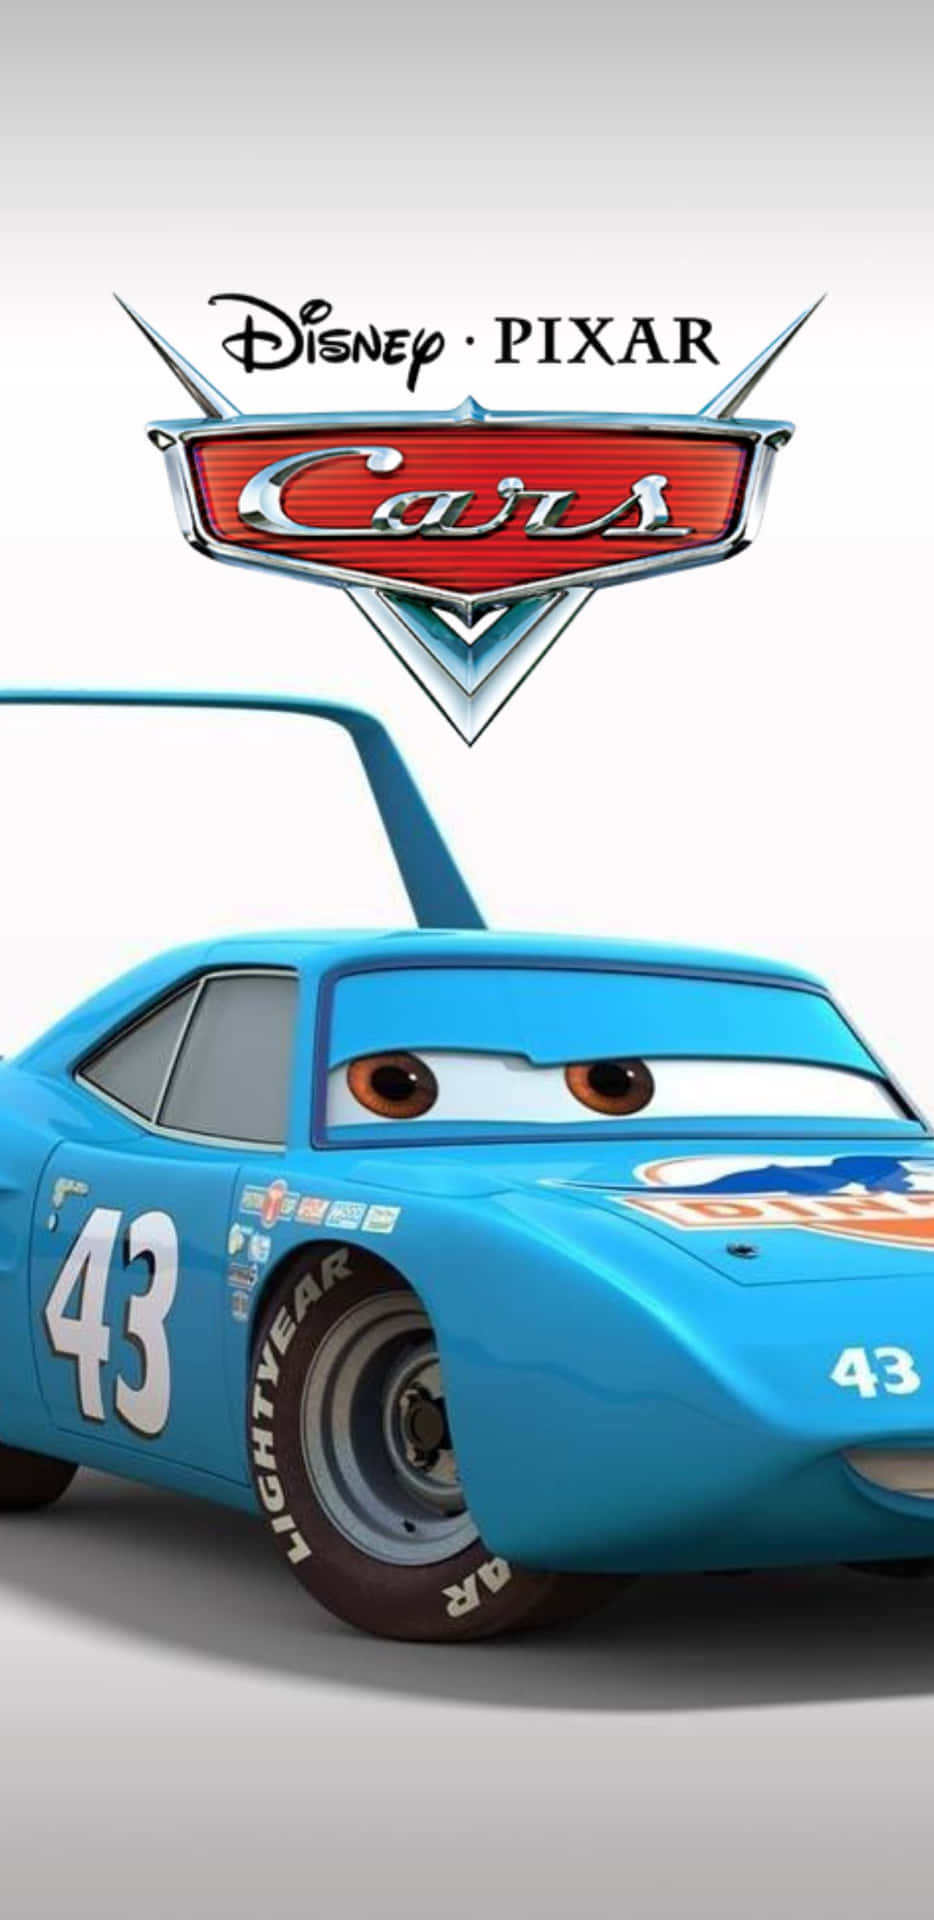 Disney Pixar Cars - Pixar Cars